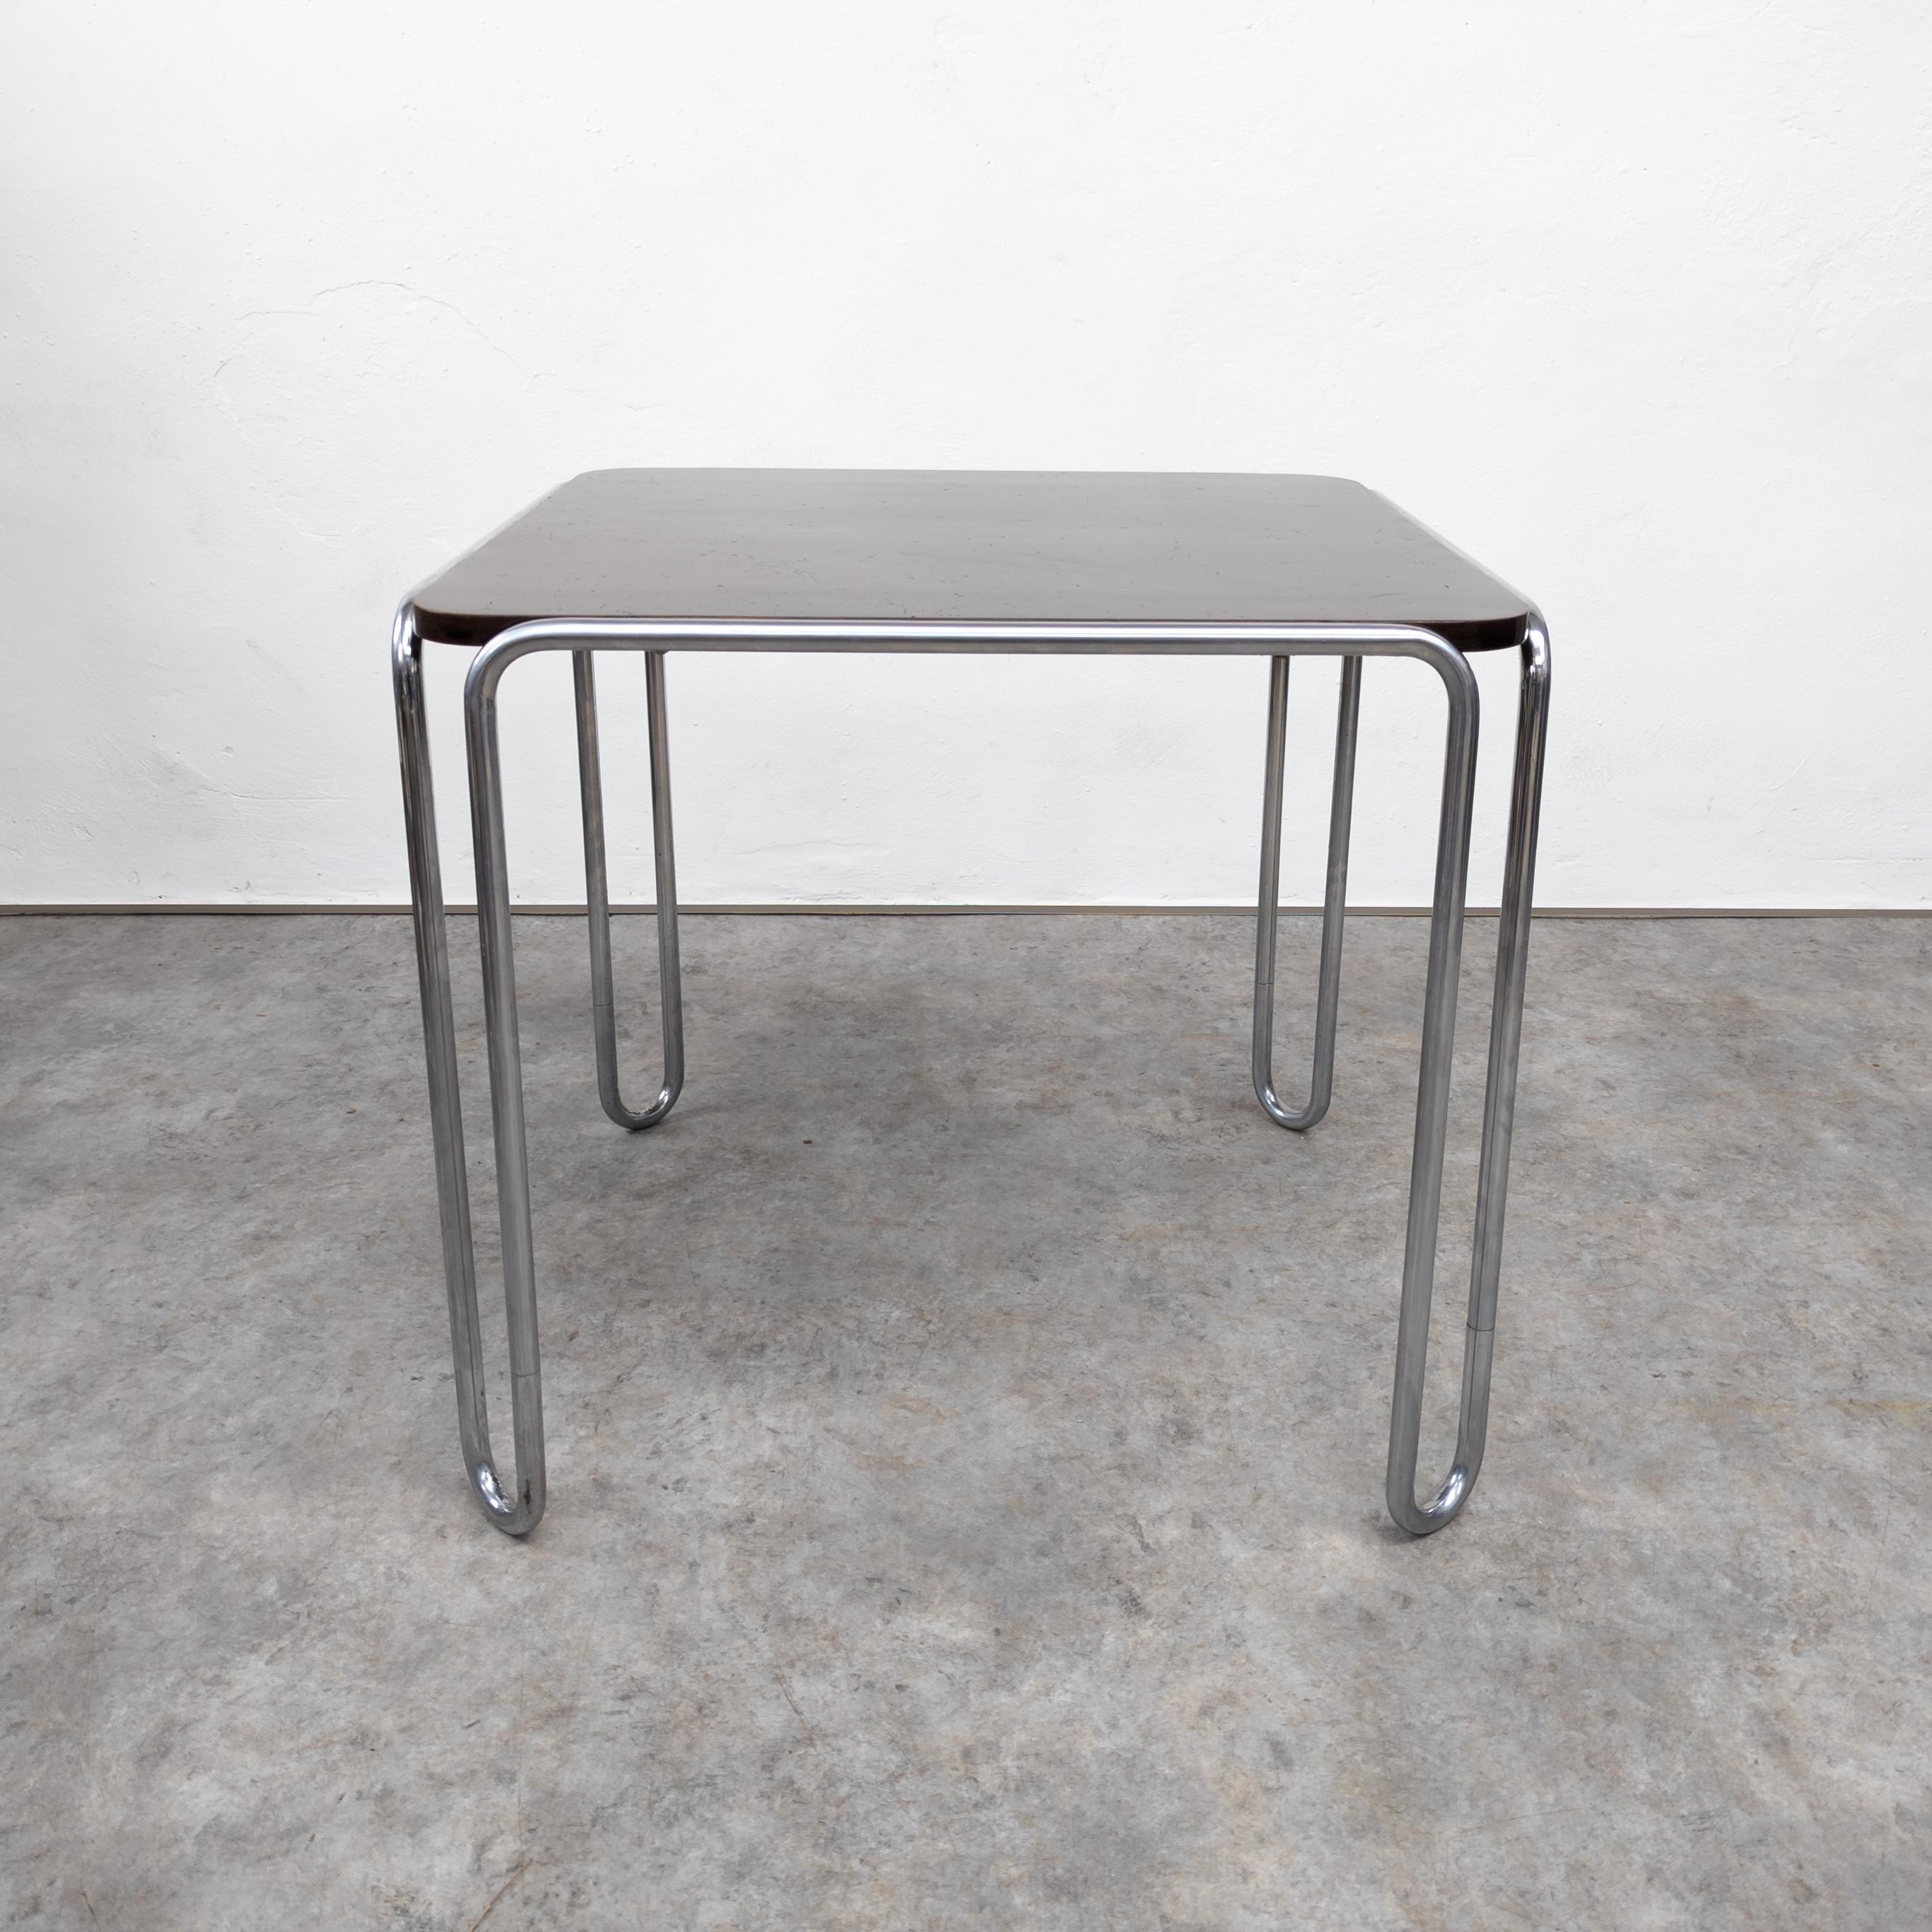 La table Thonet B10 conçue par Marcel Breuer est une pièce emblématique du mobilier moderniste. Il est doté d'un cadre élégant en acier tubulaire avec une  Le plateau en bois incarne les principes de simplicité, de fonctionnalité et de formes